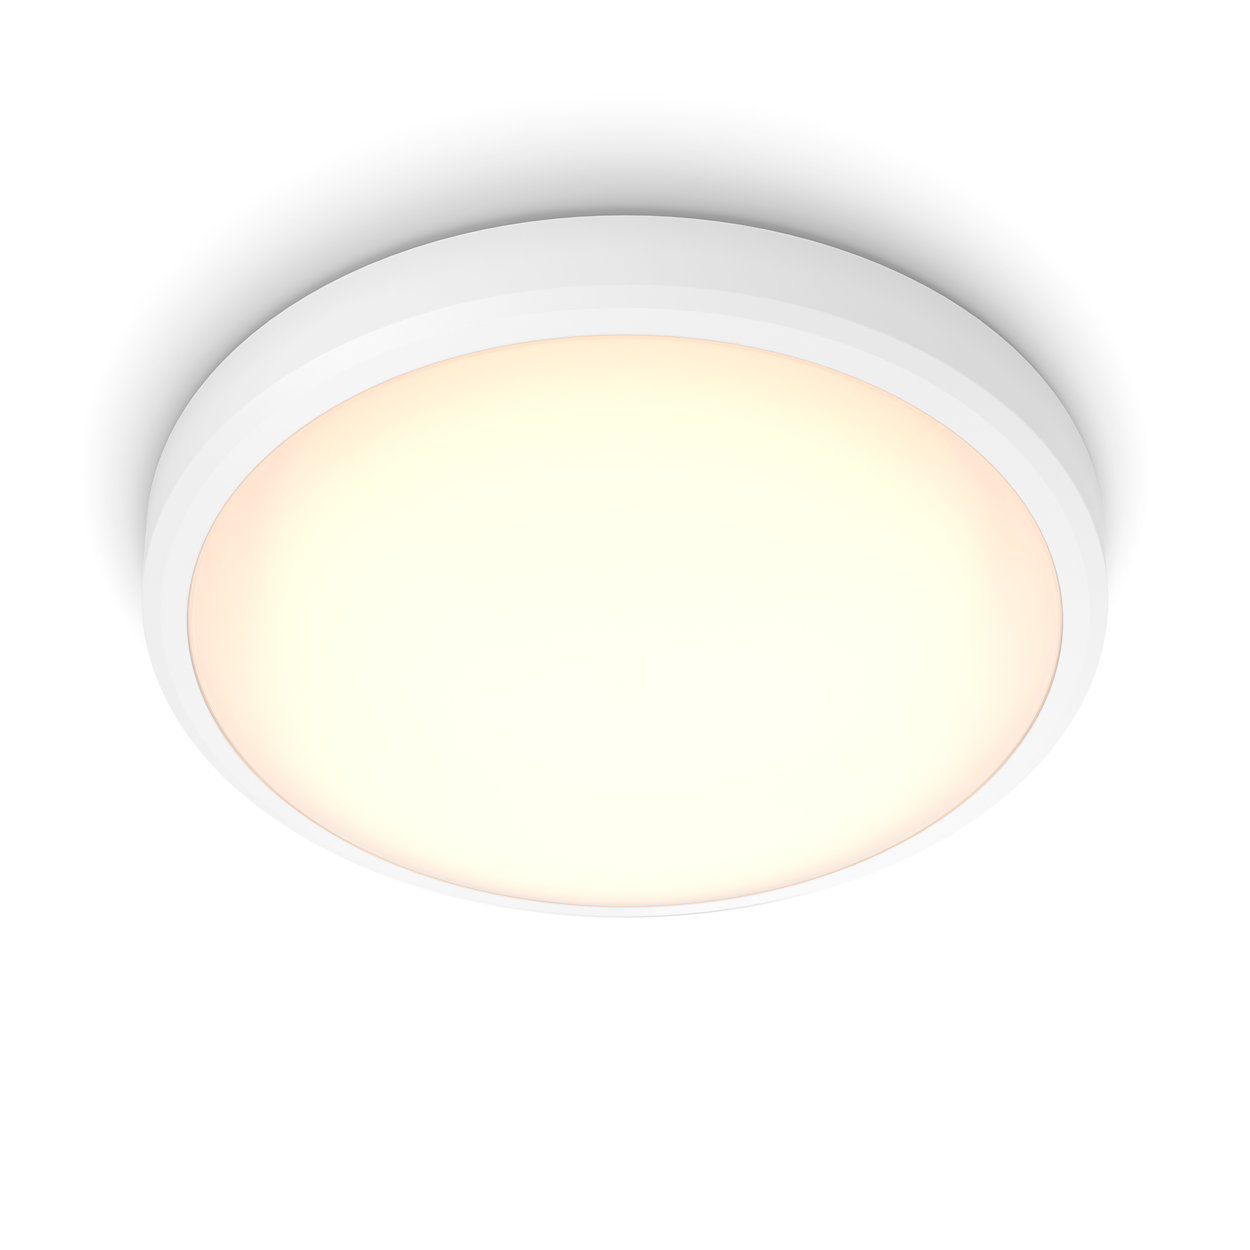 Behagligt LED-ljus som är skonsamt för ögonen